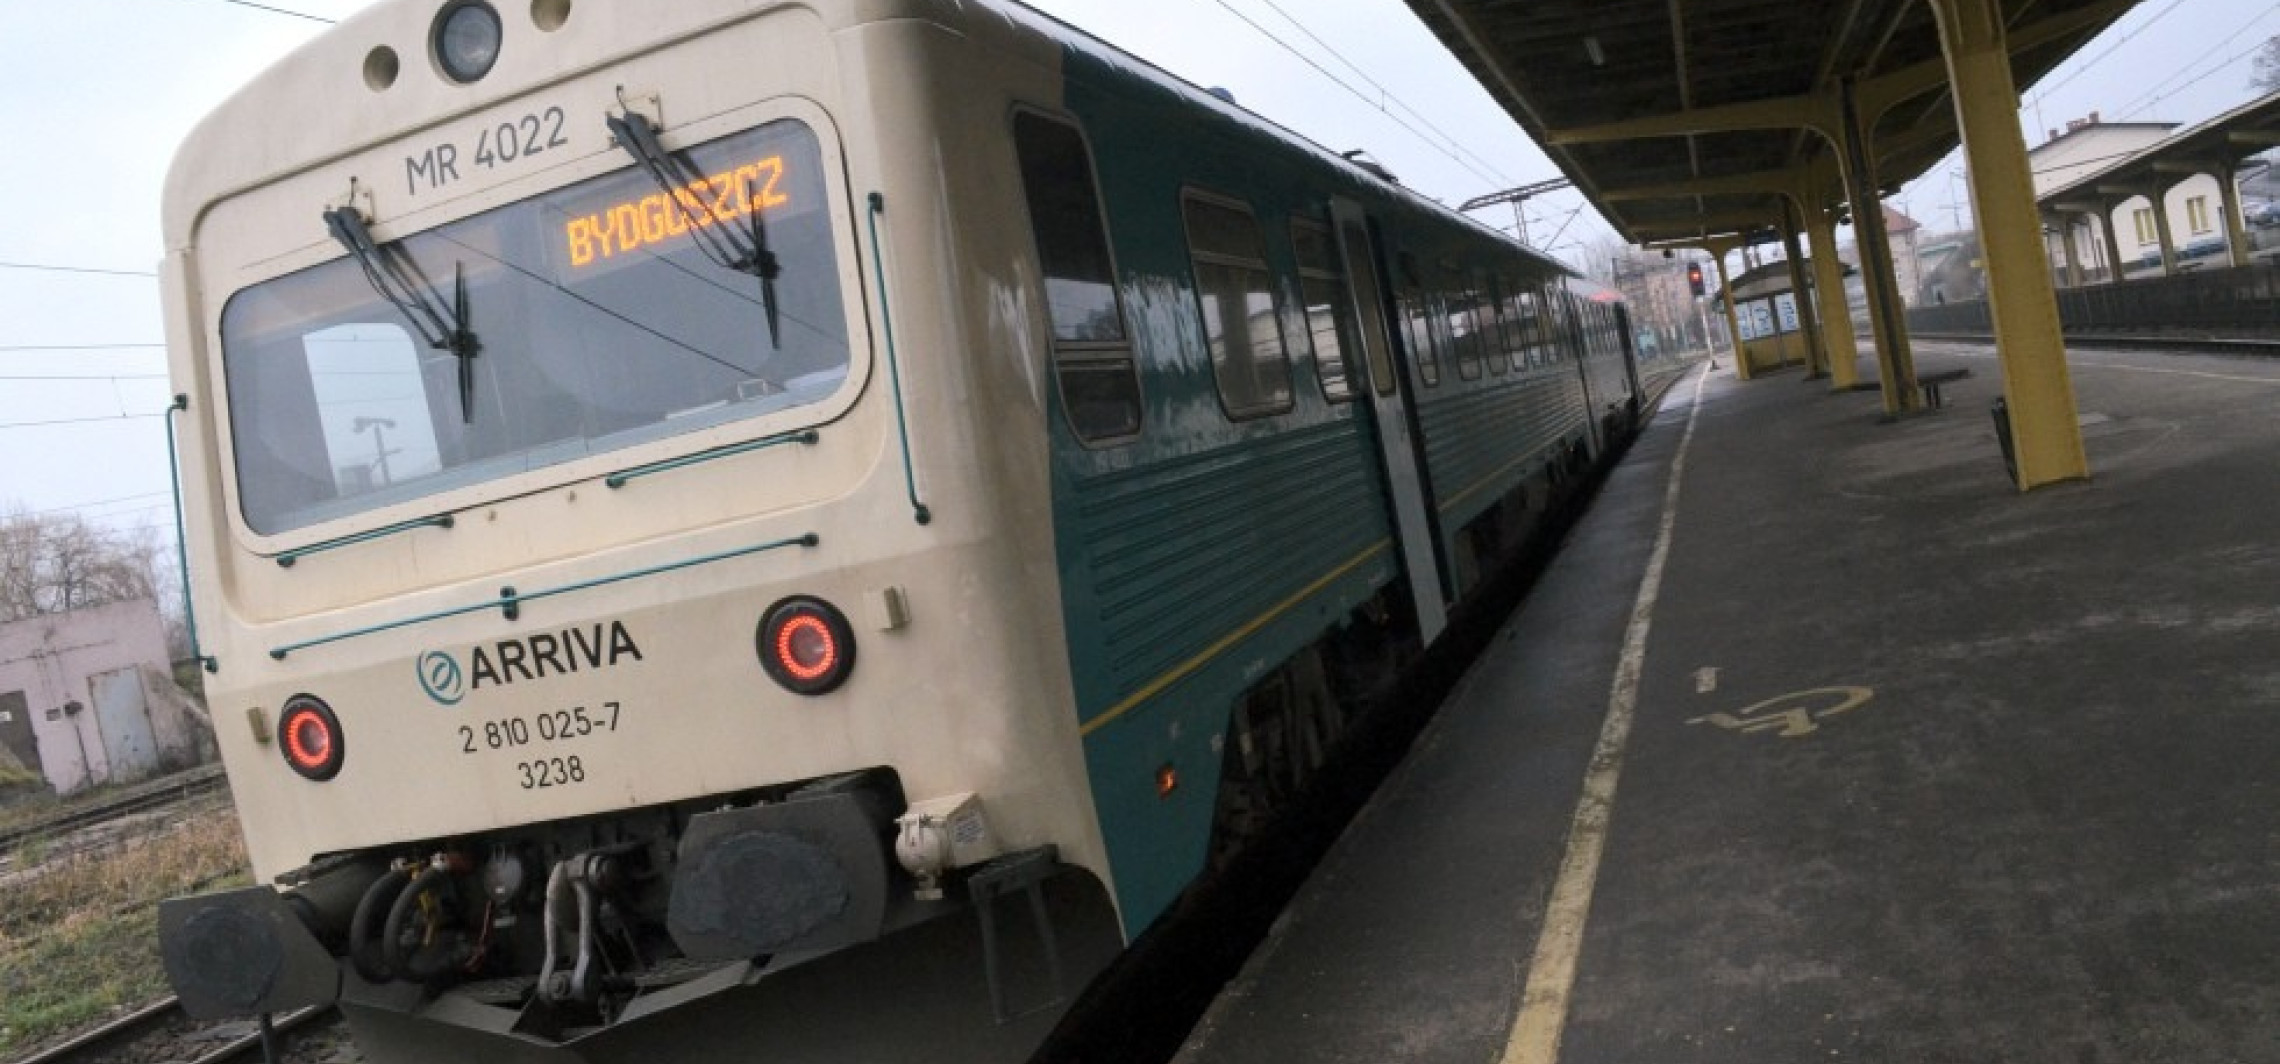 Inowrocław - Do Kruszwicy będzie można pojechać pociągiem